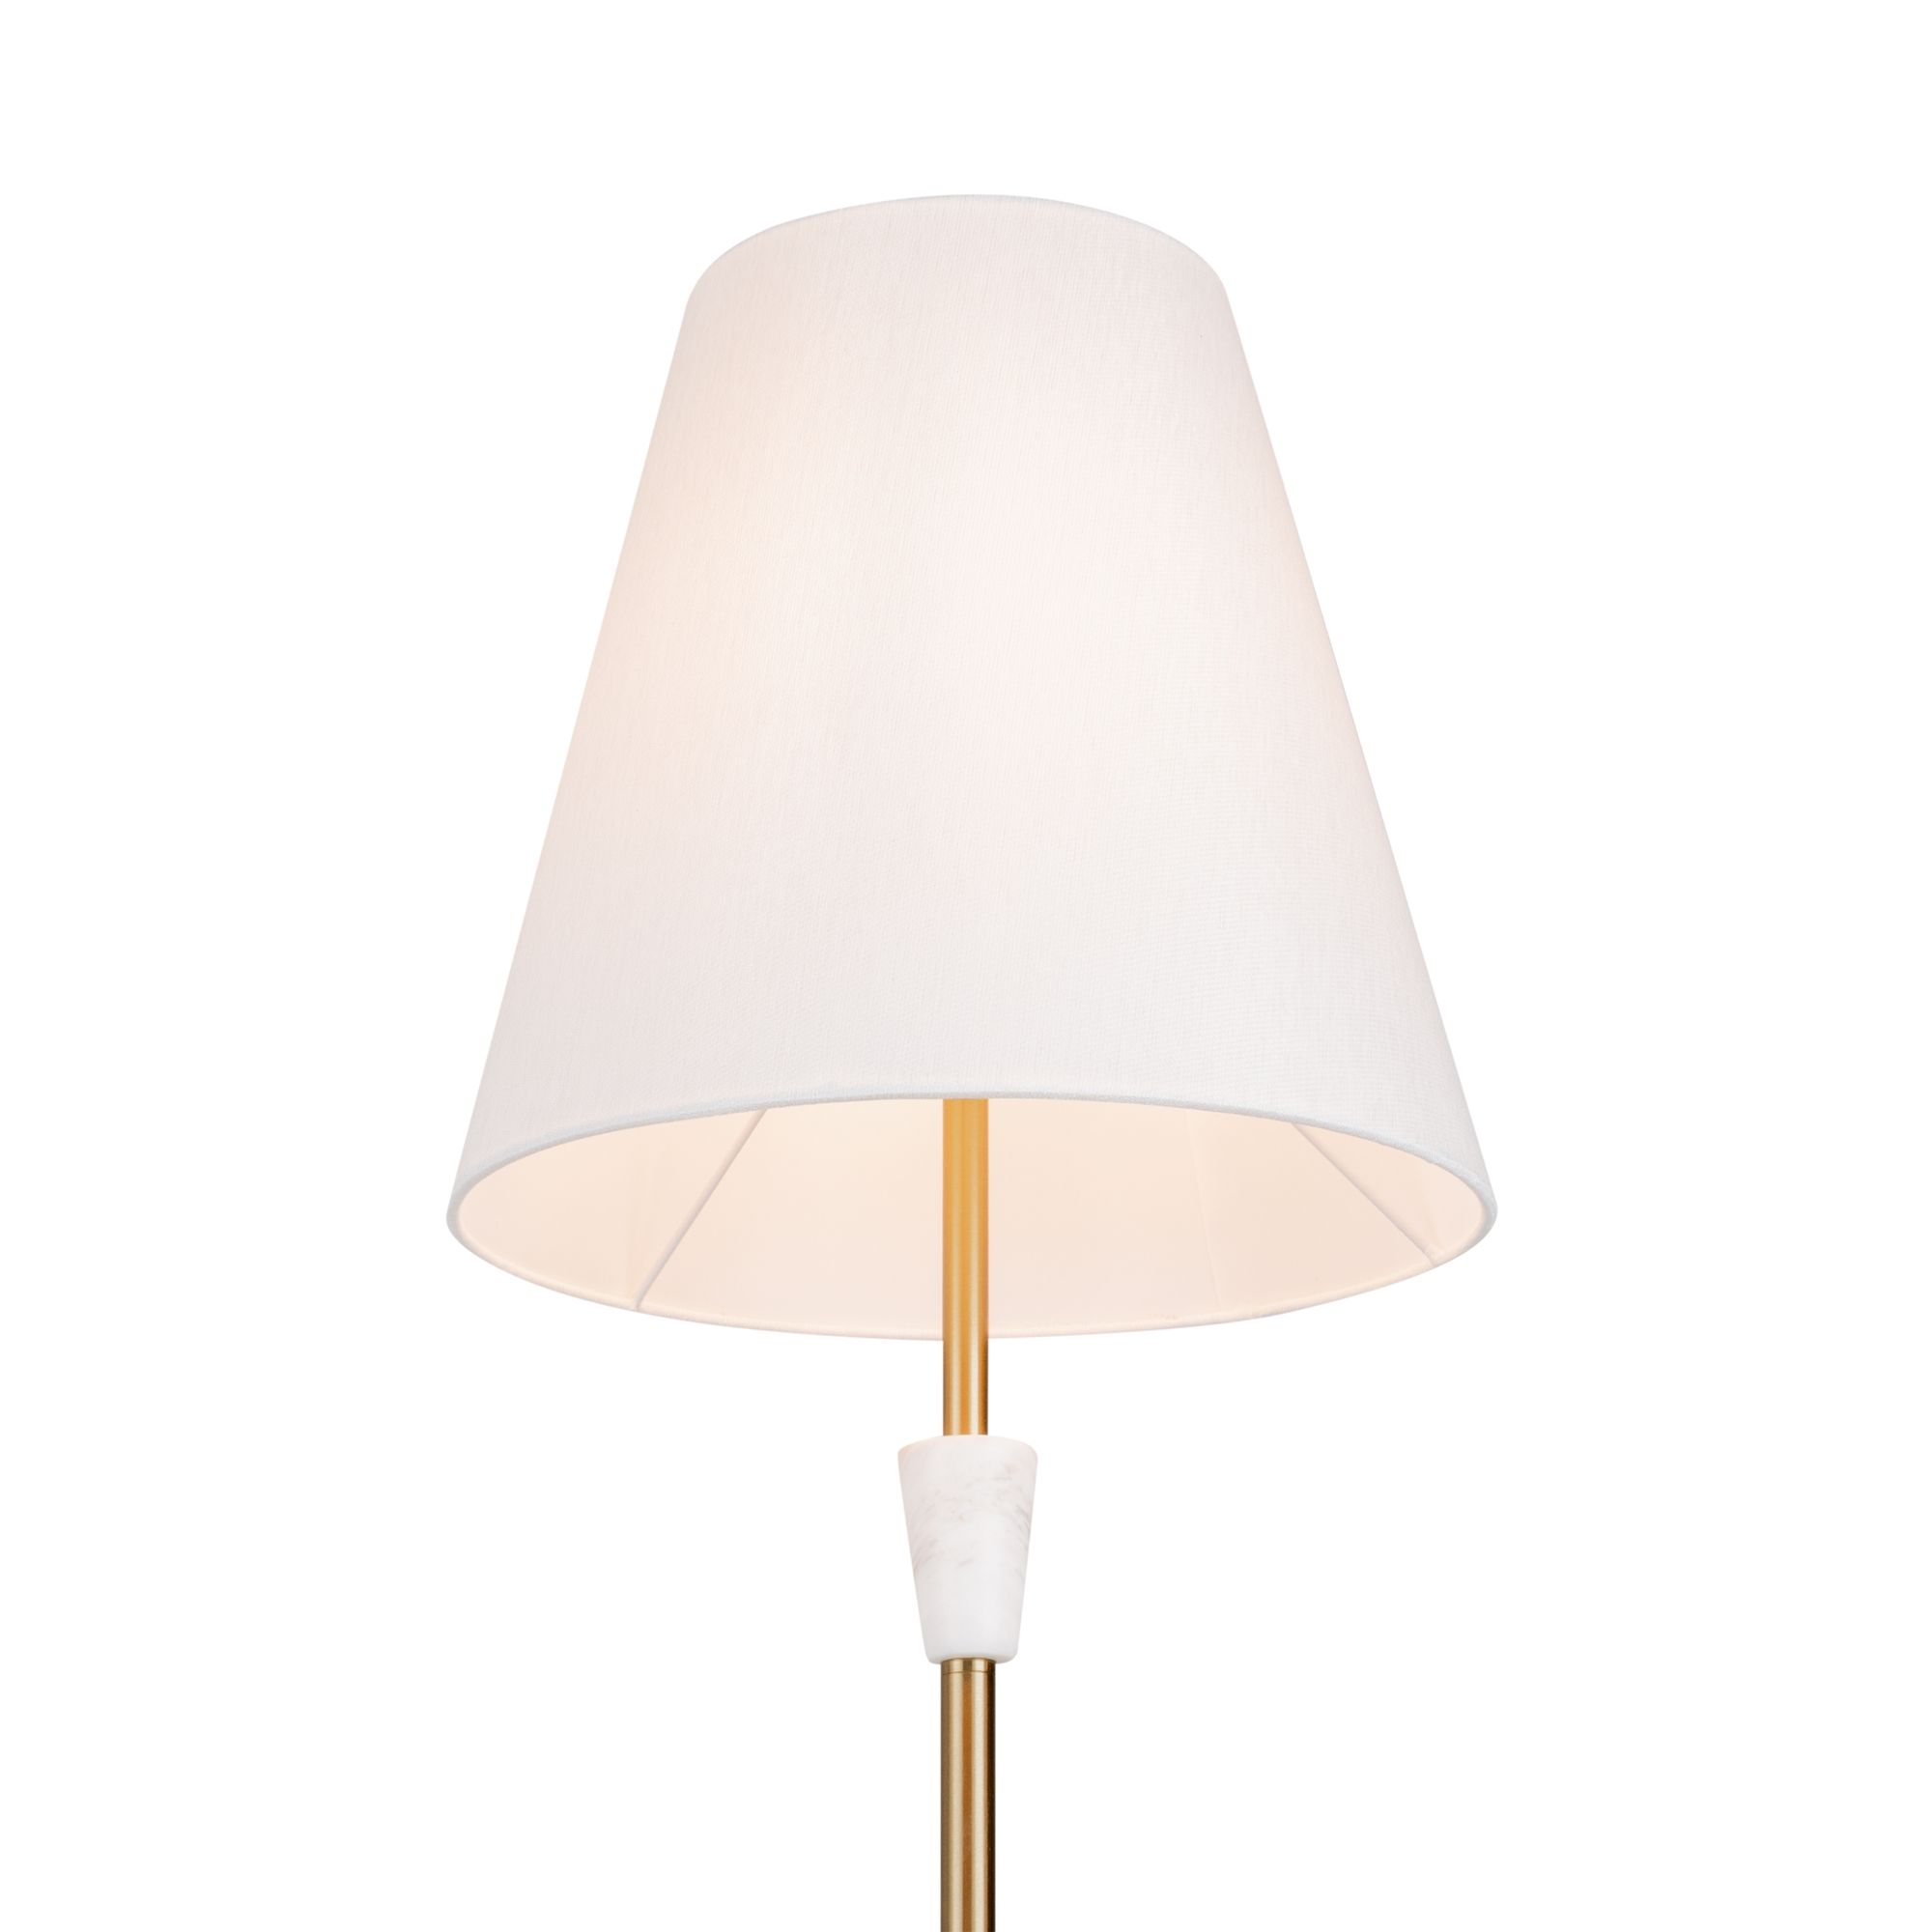 Напольный светильник (торшер) Pietra Modern